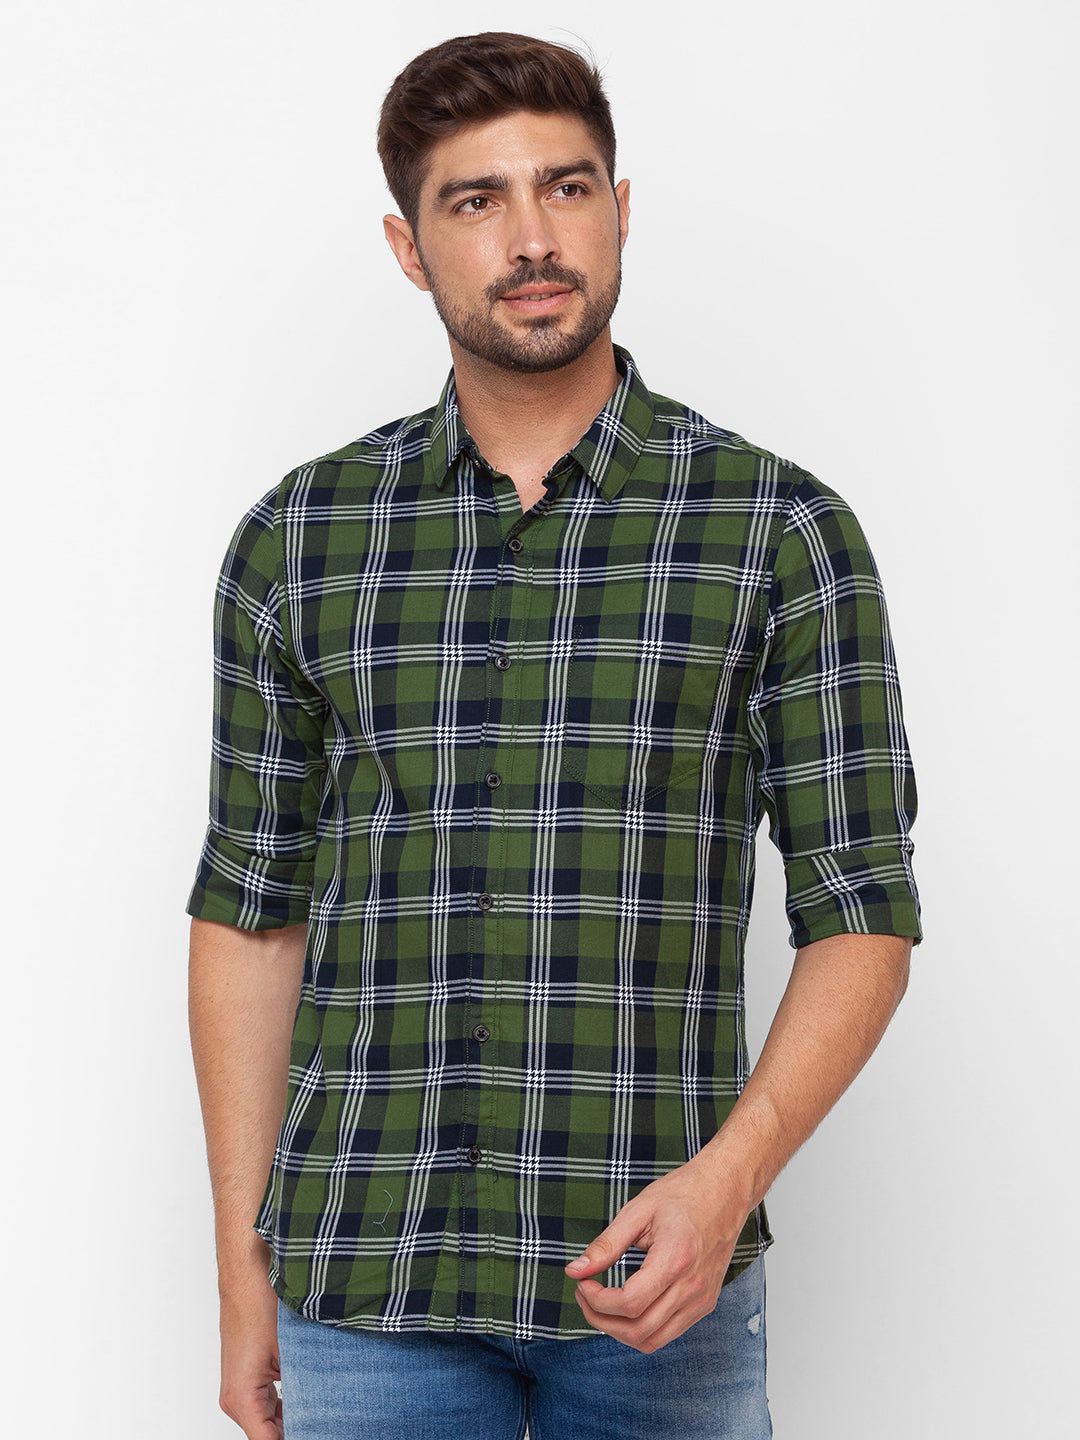 Spykar Olive Green Cotton Full Sleeve Checks Shirt For Men